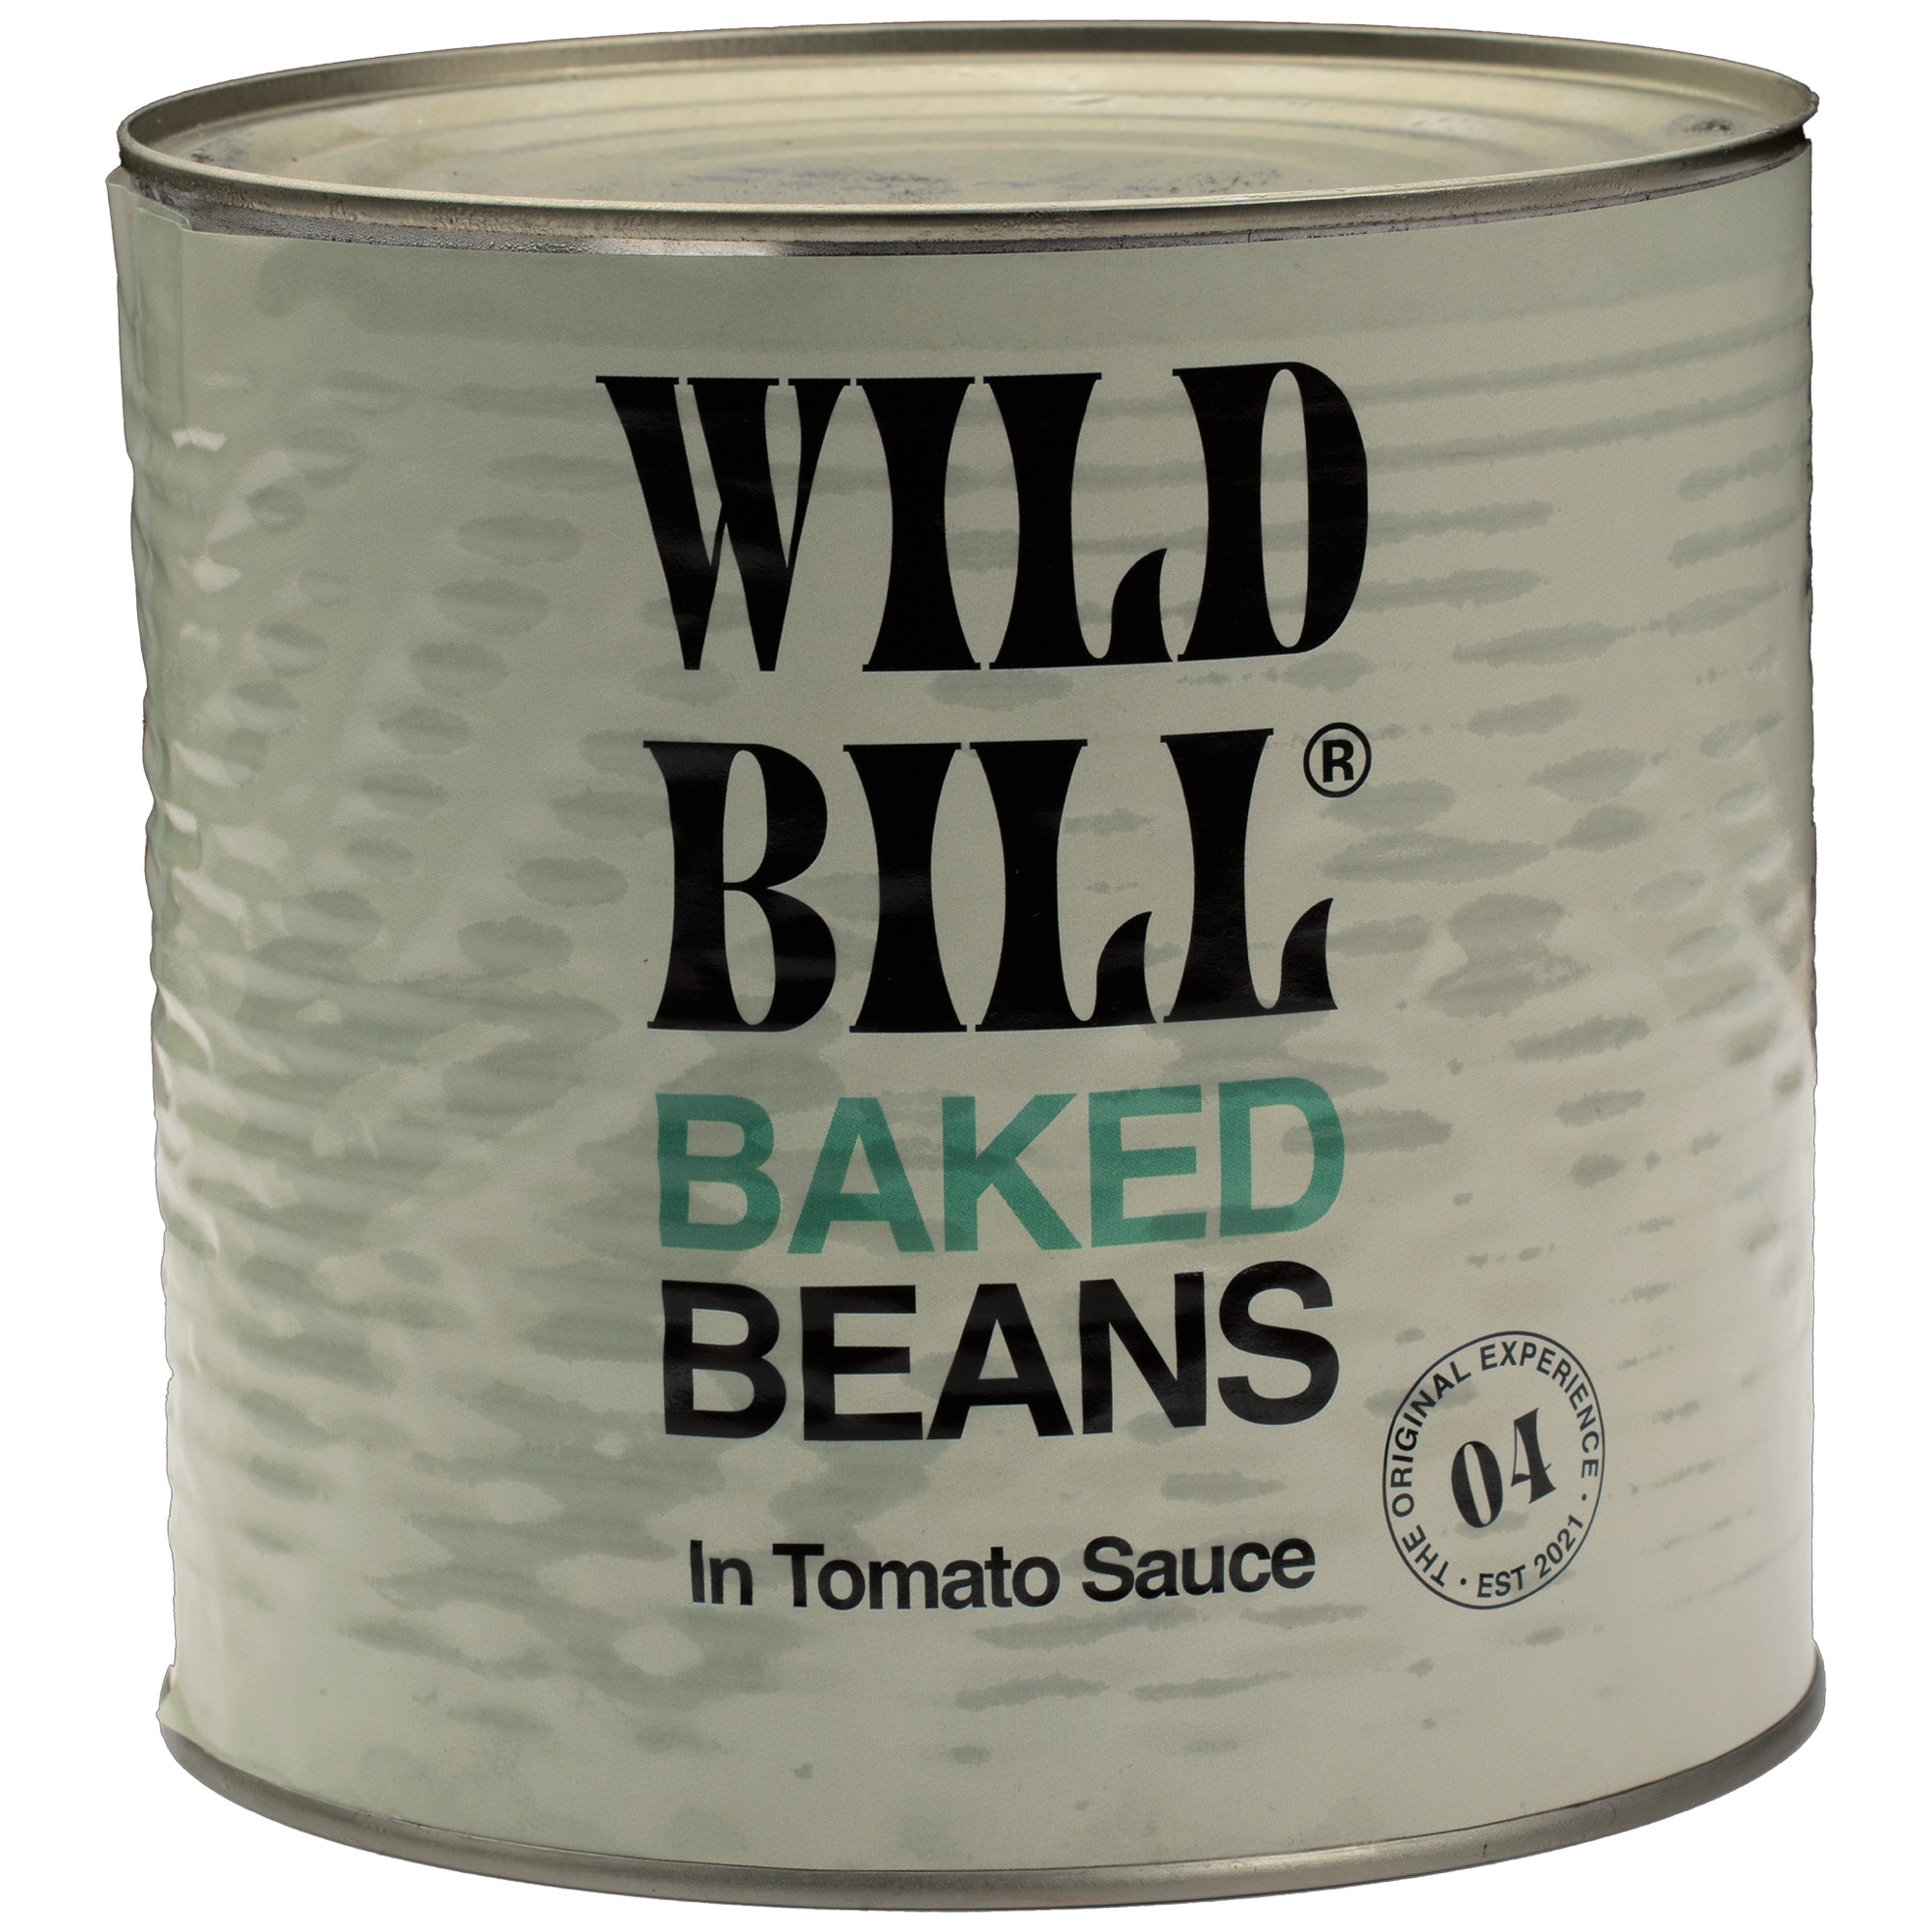 Wild Bill Baked Beans 2,62kg